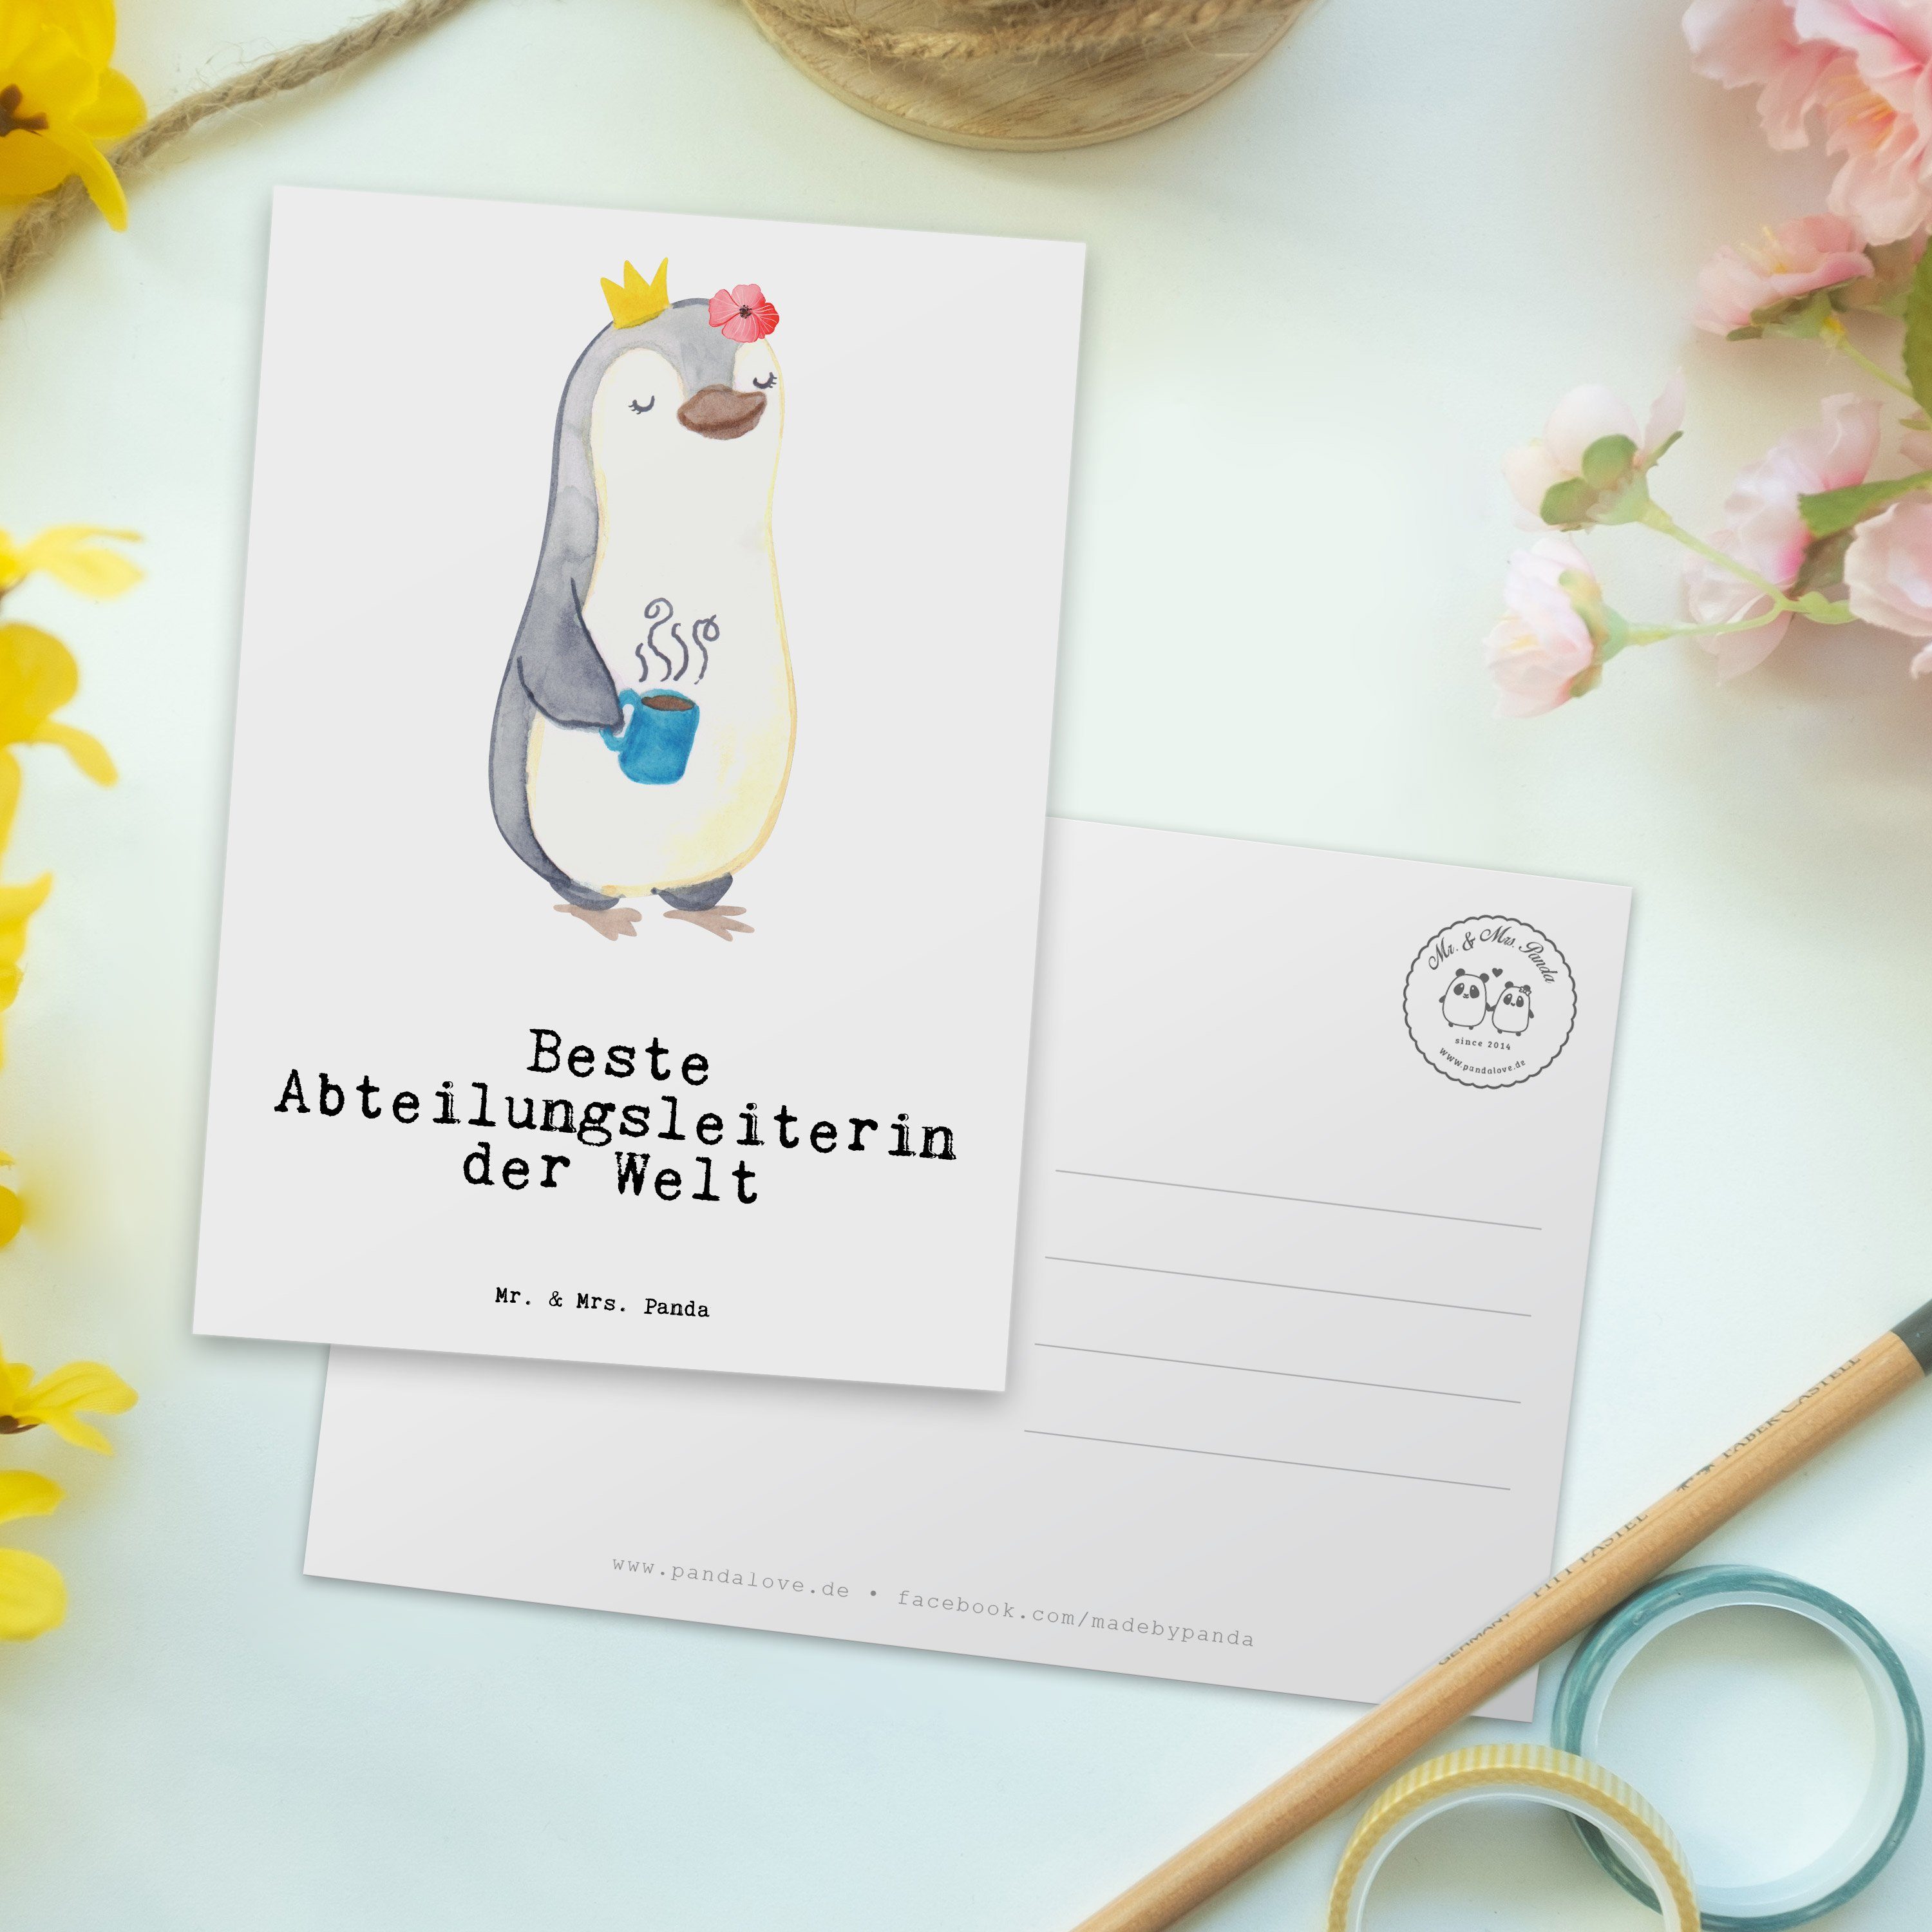 Mr. & Danke, A Mrs. Postkarte - Welt Pinguin Weiß Panda der Abteilungsleiterin - Geschenk, Beste